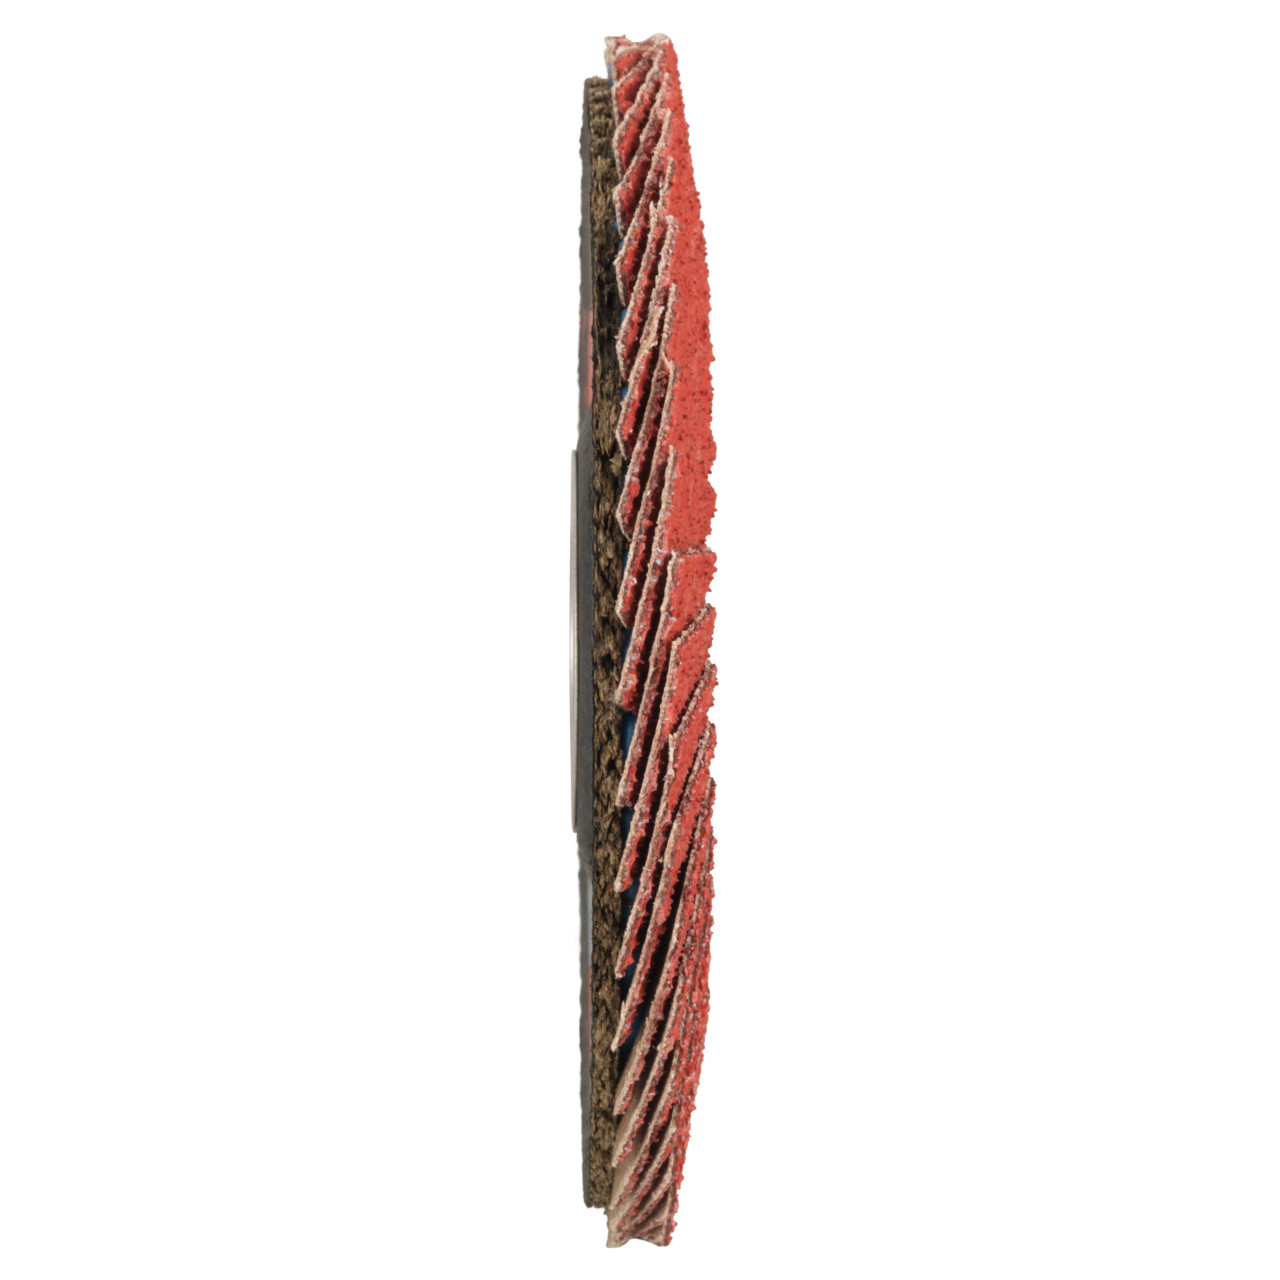 Tyrolit Rondelle éventail DxH 178x22,23 CERAMIC pour acier inoxydable, P60, forme : 28A - modèle droit (modèle à corps en fibre de verre), art. 34166860